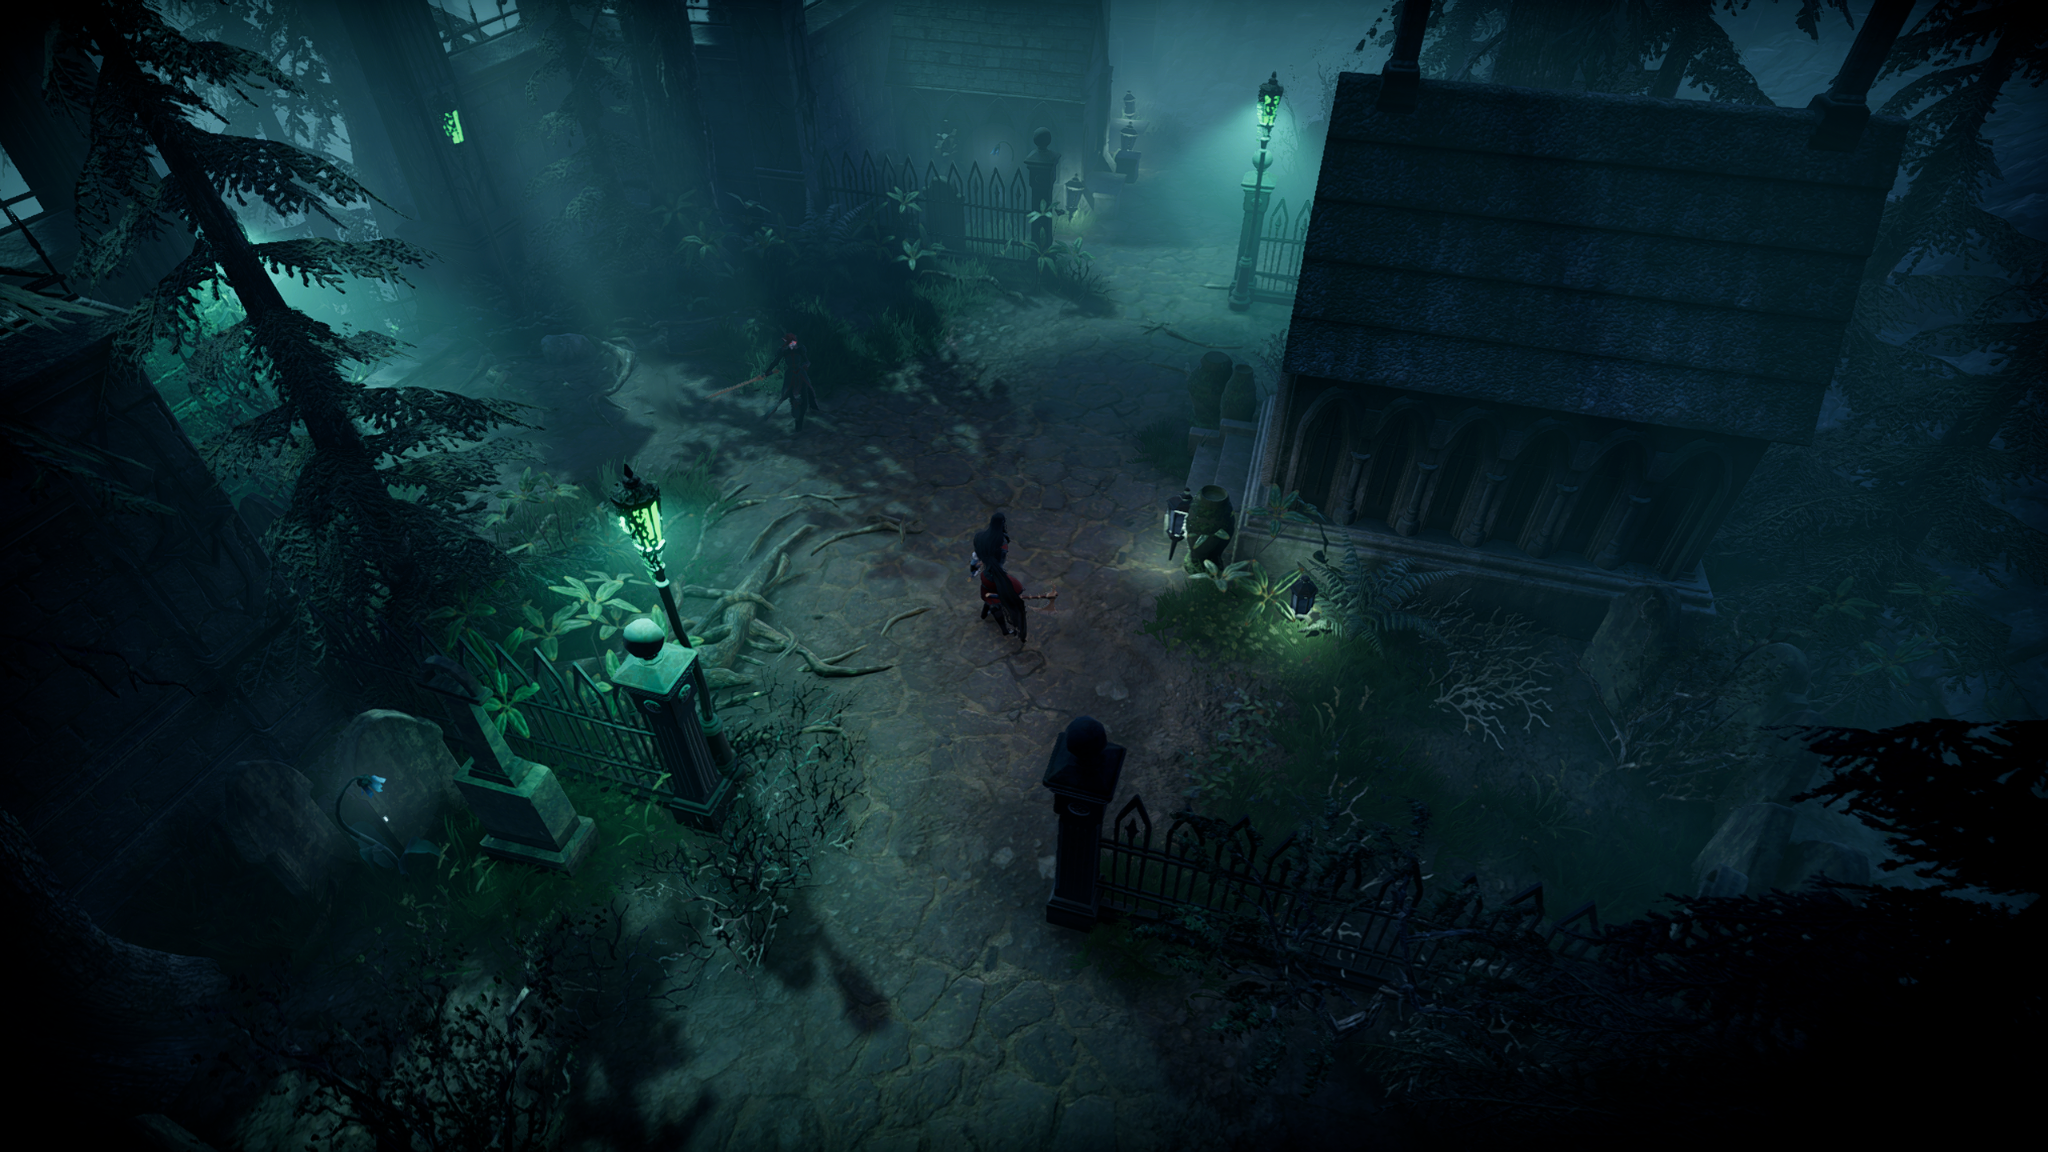 《夜族崛起》现已登陆PS5,将獠牙刺入吸血鬼开放世界游戏了